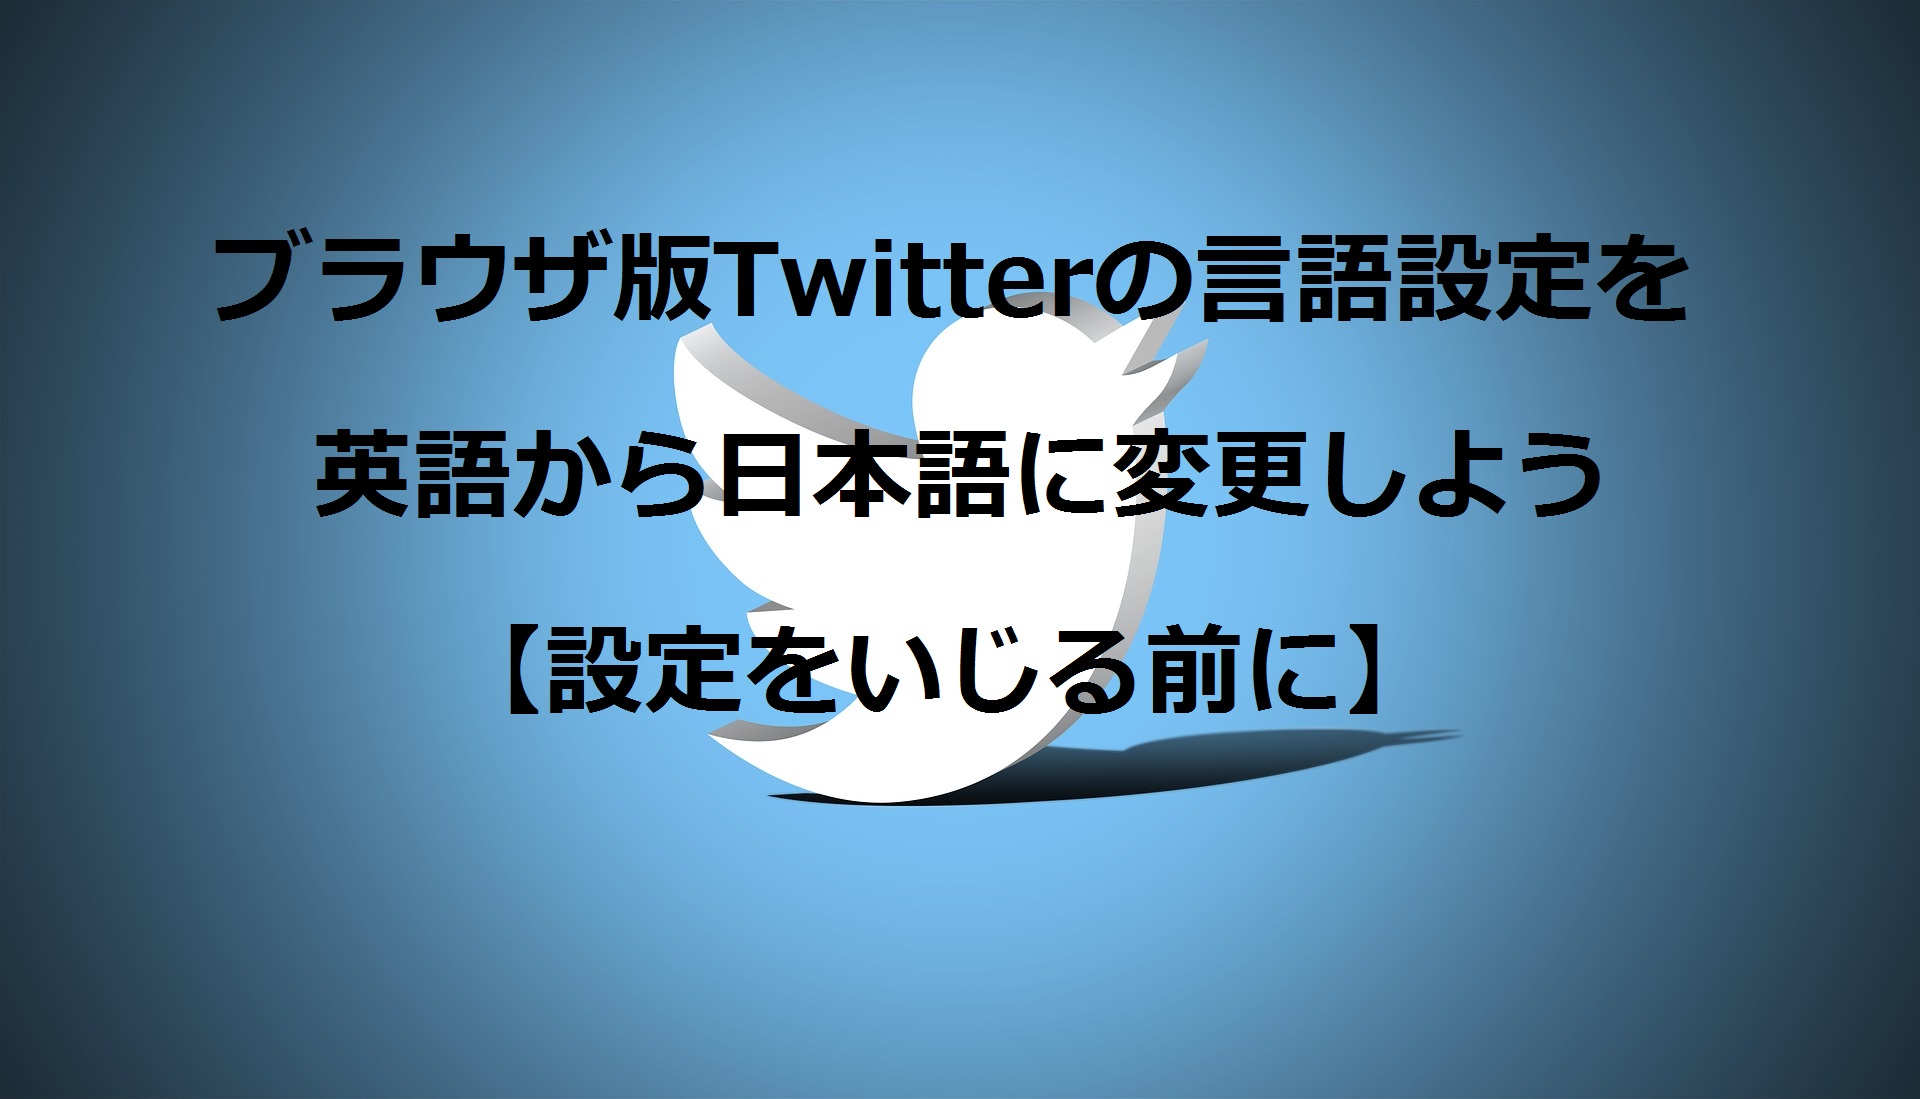 Twitter ブラウザ版twitterの言語設定を英語から日本語に変更しよう 設定をいじる前に Easily